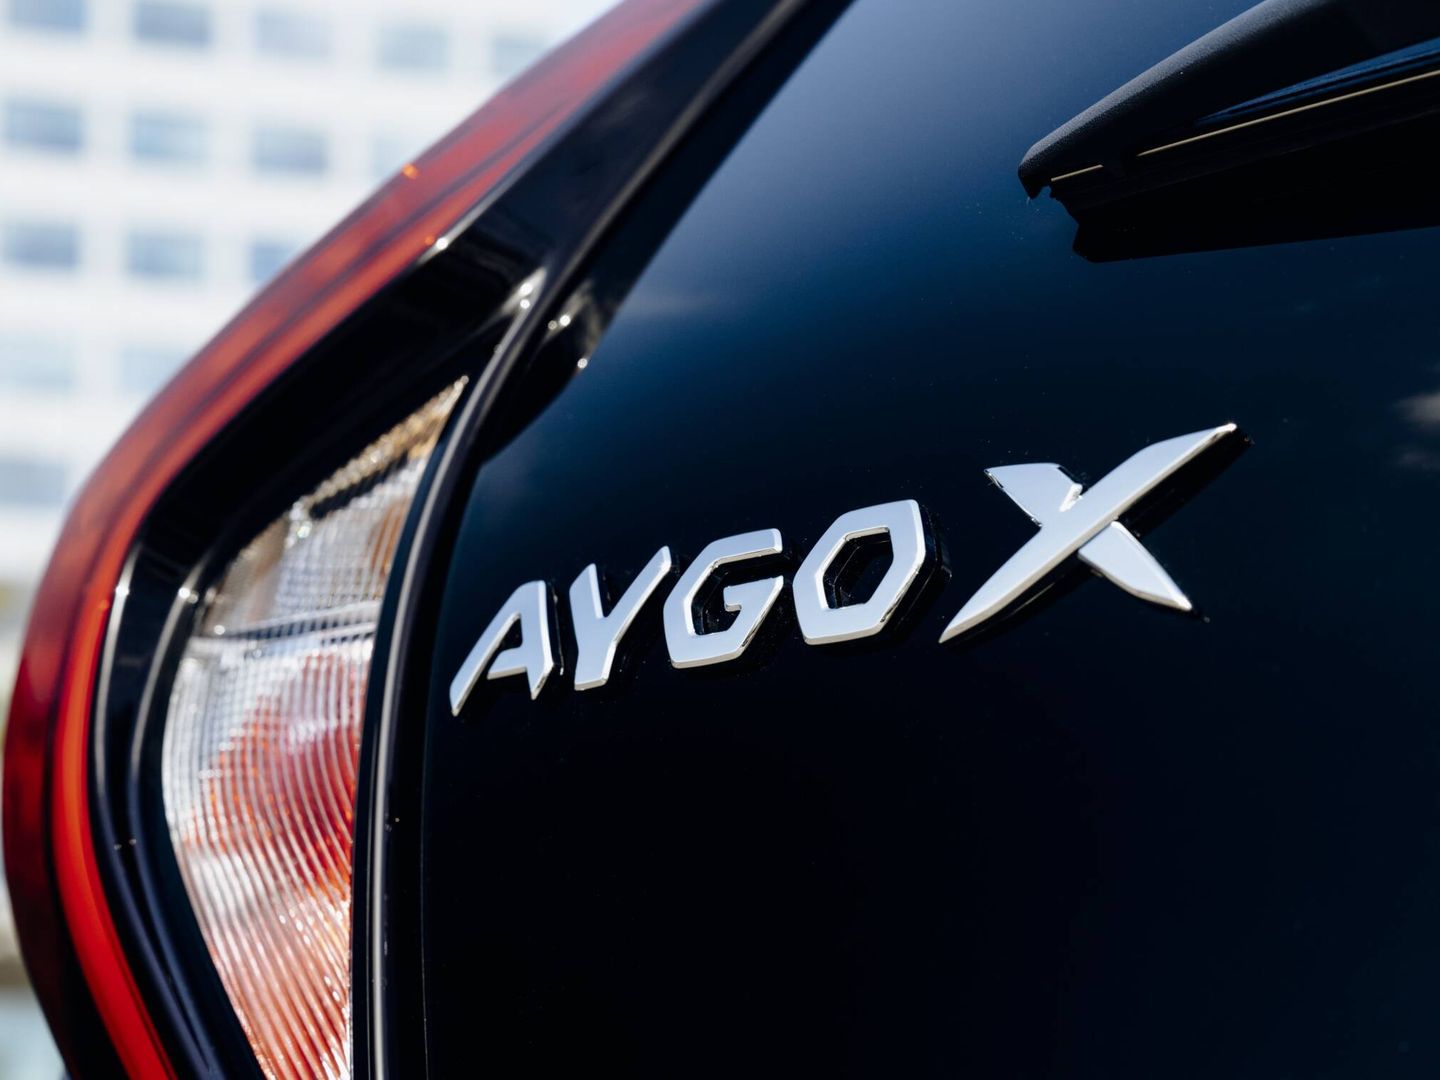 El coche se llama Aygo X, aunque en Toyota prefieren llamarle comercialmente Aygo X Cross.